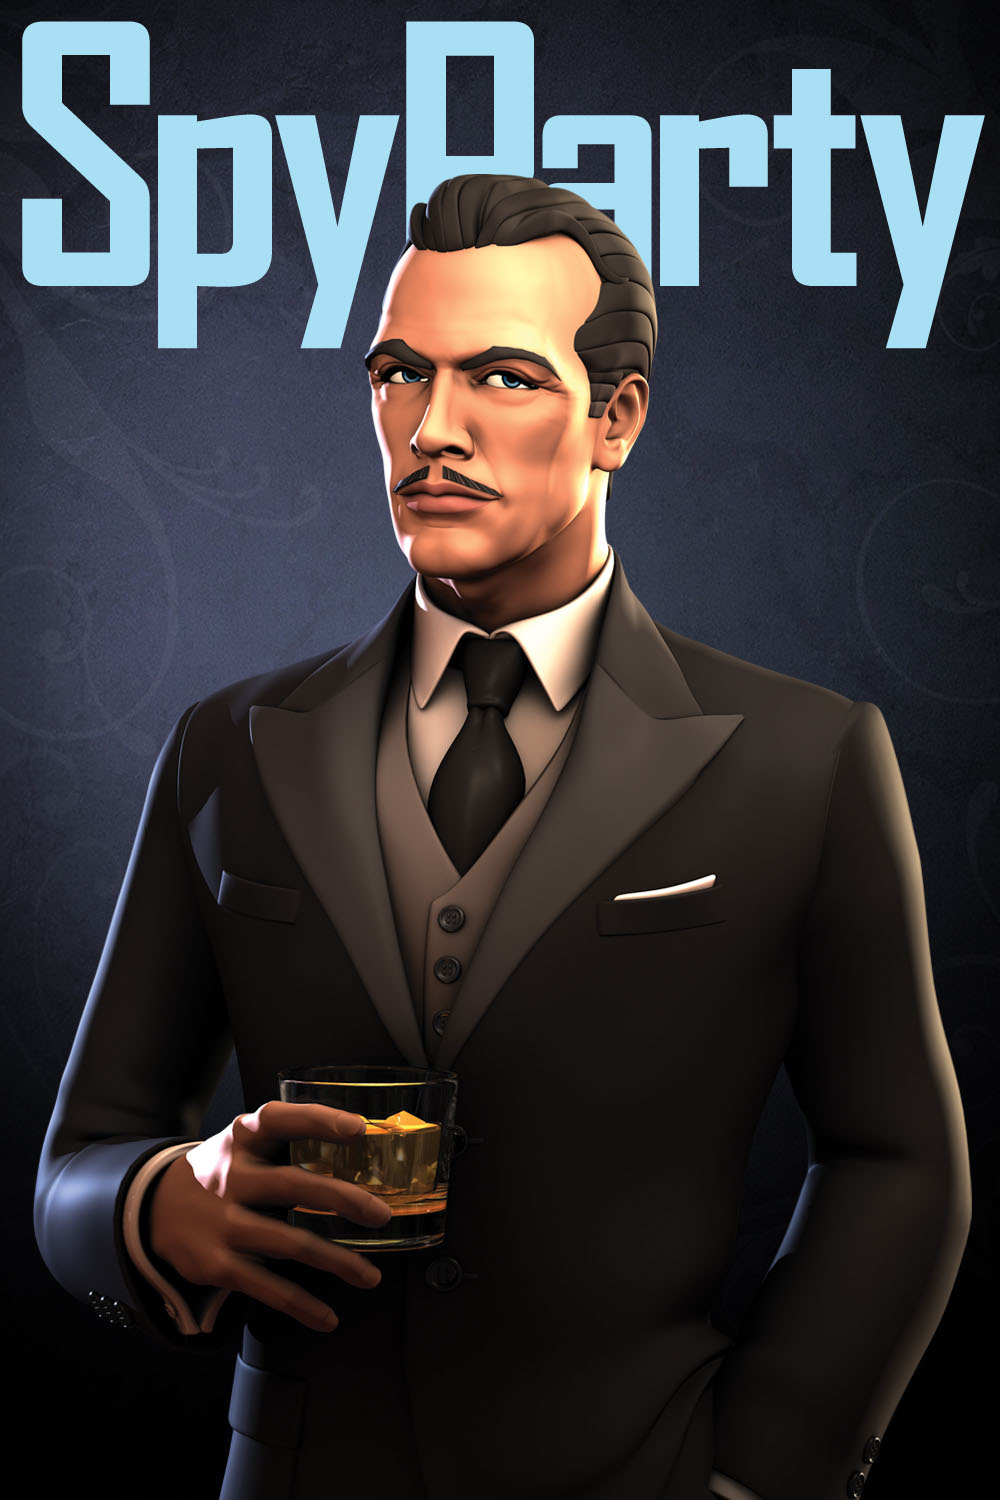 Spy party стим фото 41